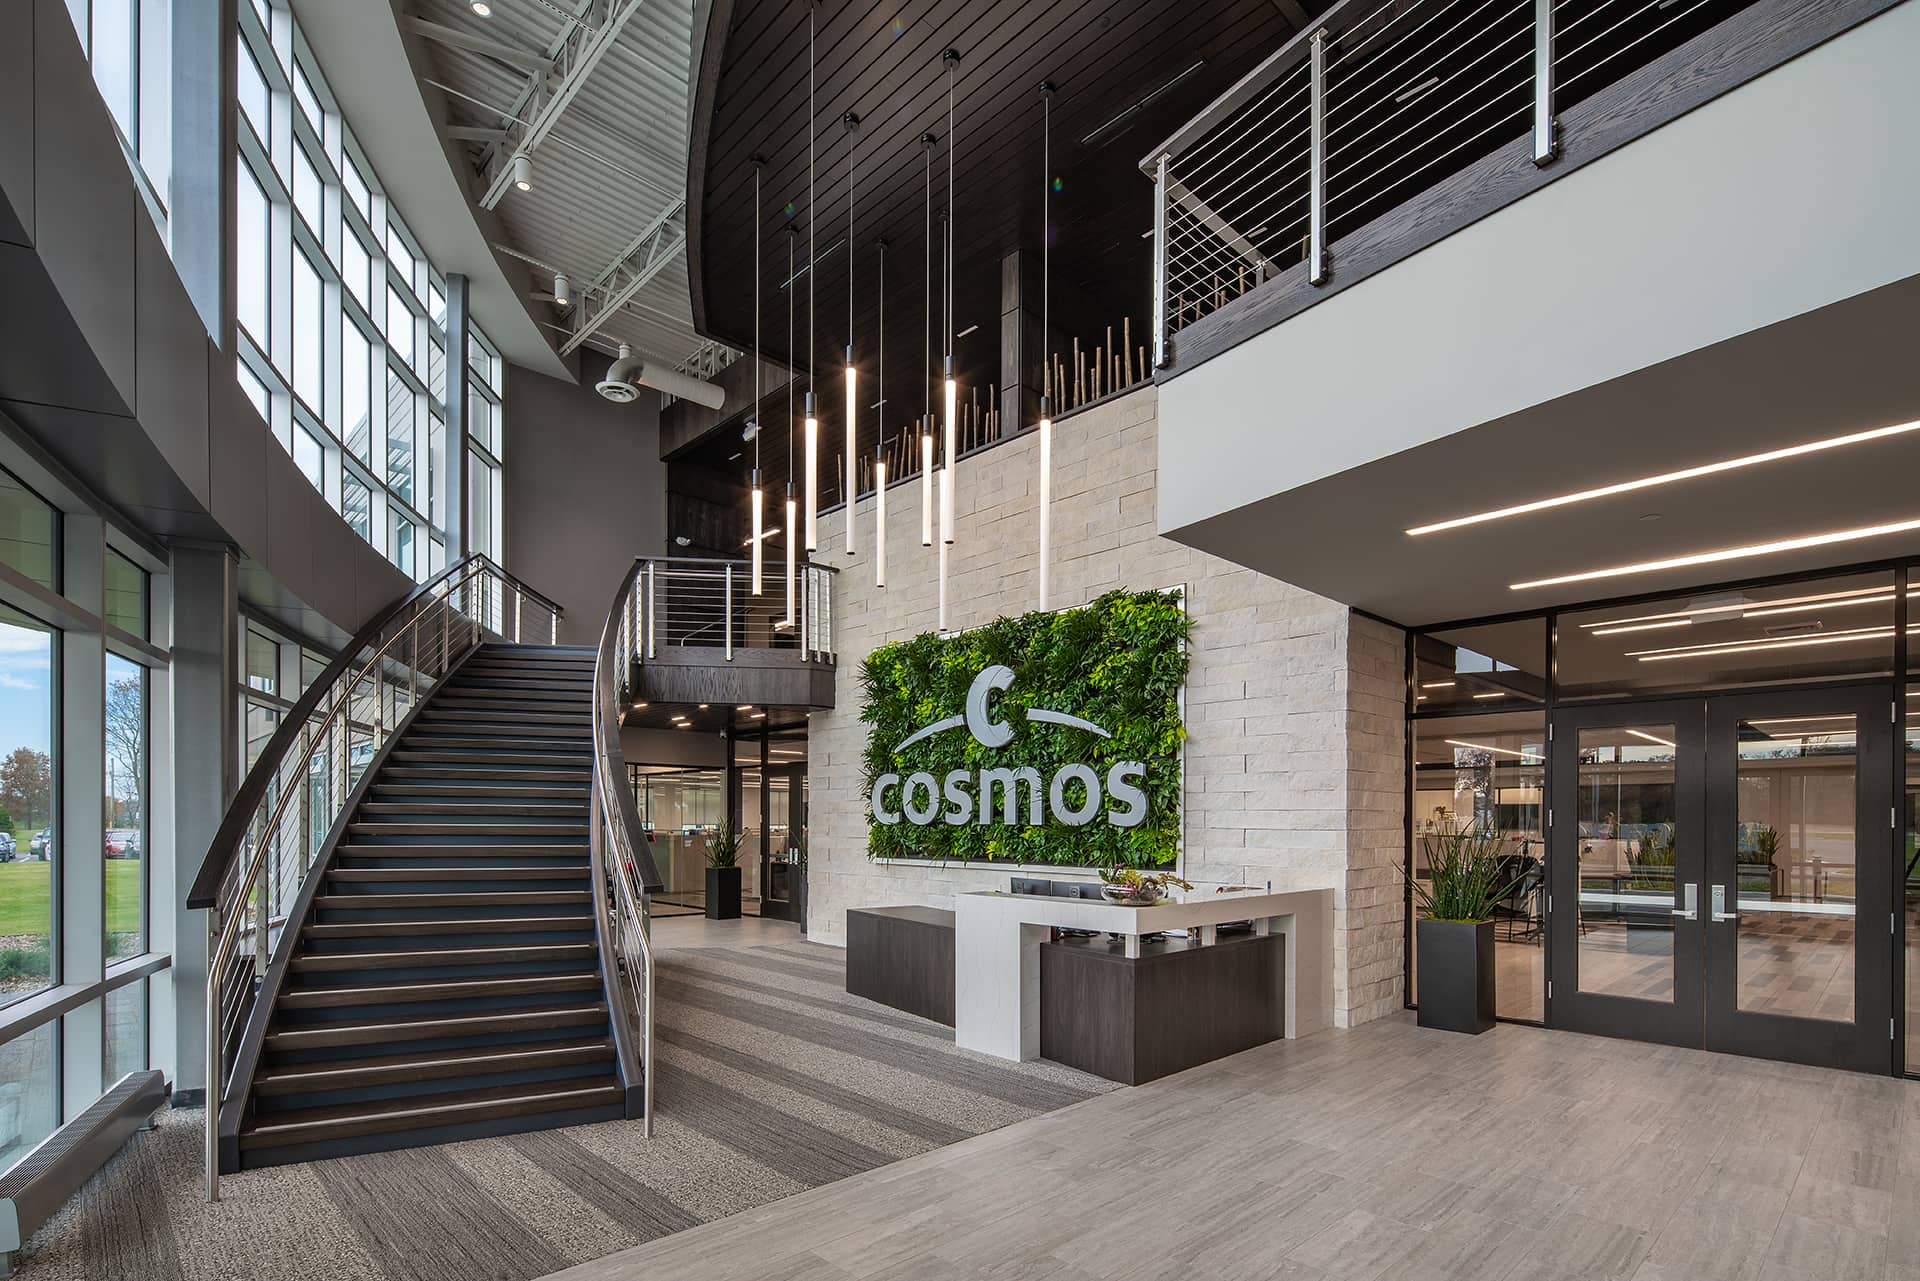 Cosmos Corporation